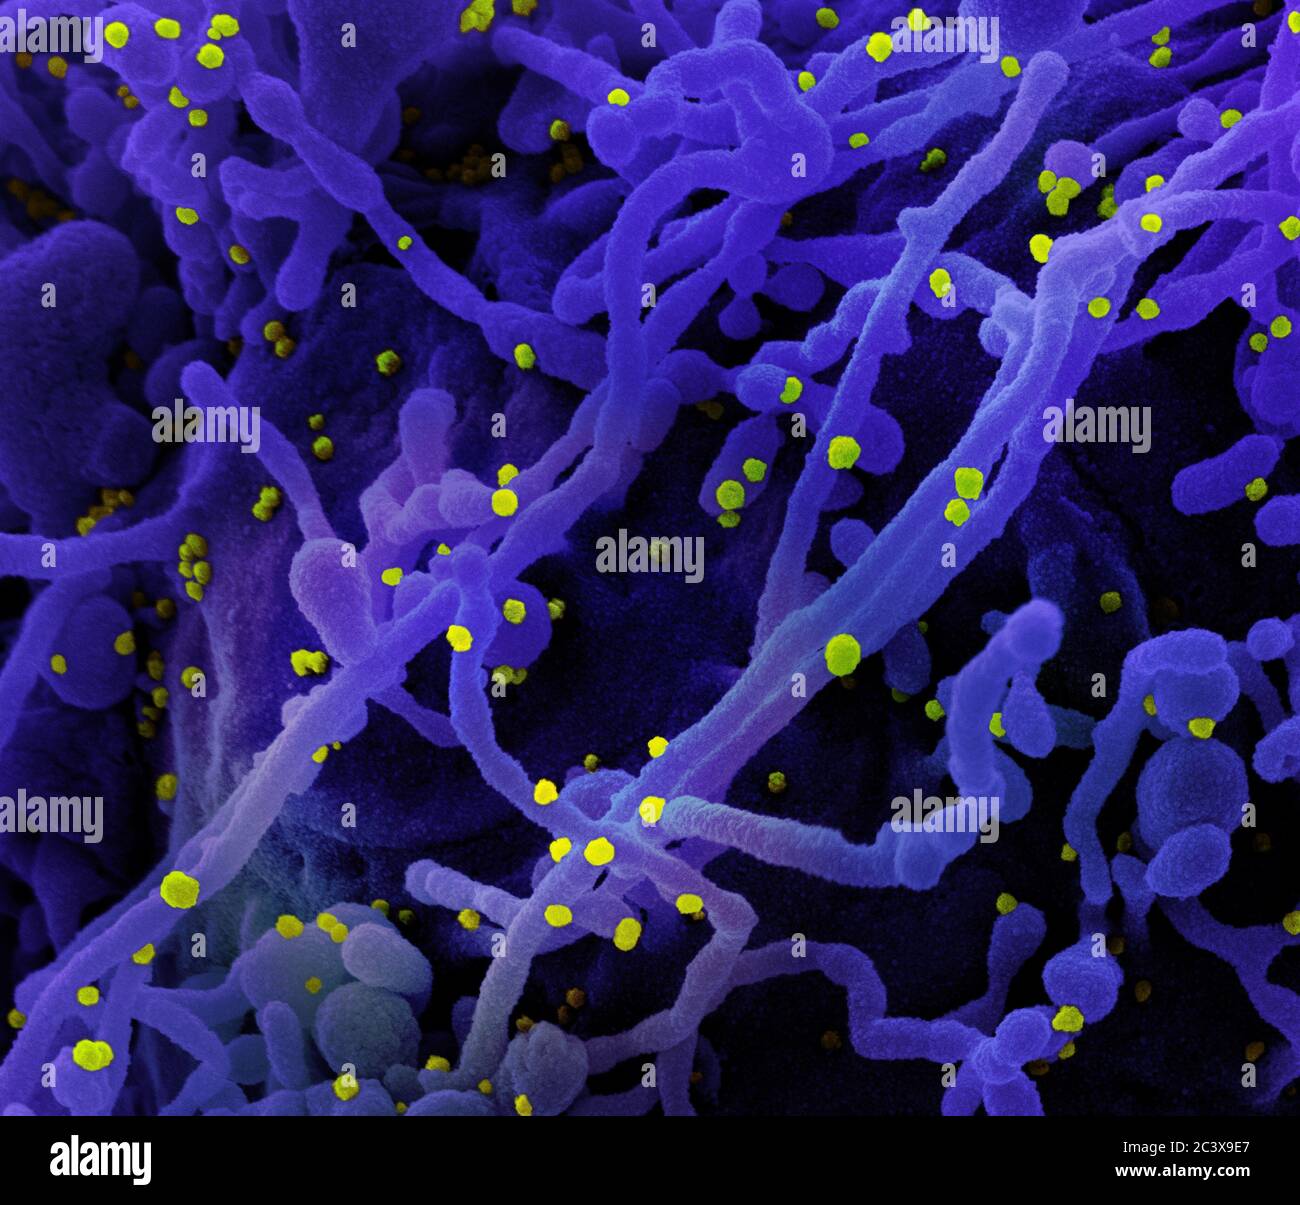 Neues Coronavirus SARS-CoV-2 Koloriertes Rasterelektronenmikroskopisch einer Zelle (violett), die mit SARS-COV-2-Viruspartikeln (gelb) infiziert ist und aus einer Patientenprobe isoliert wurde. Aufnahme in der NIAID Integrated Research Facility (IRF) in Fort Detrick, Maryland. Stockfoto